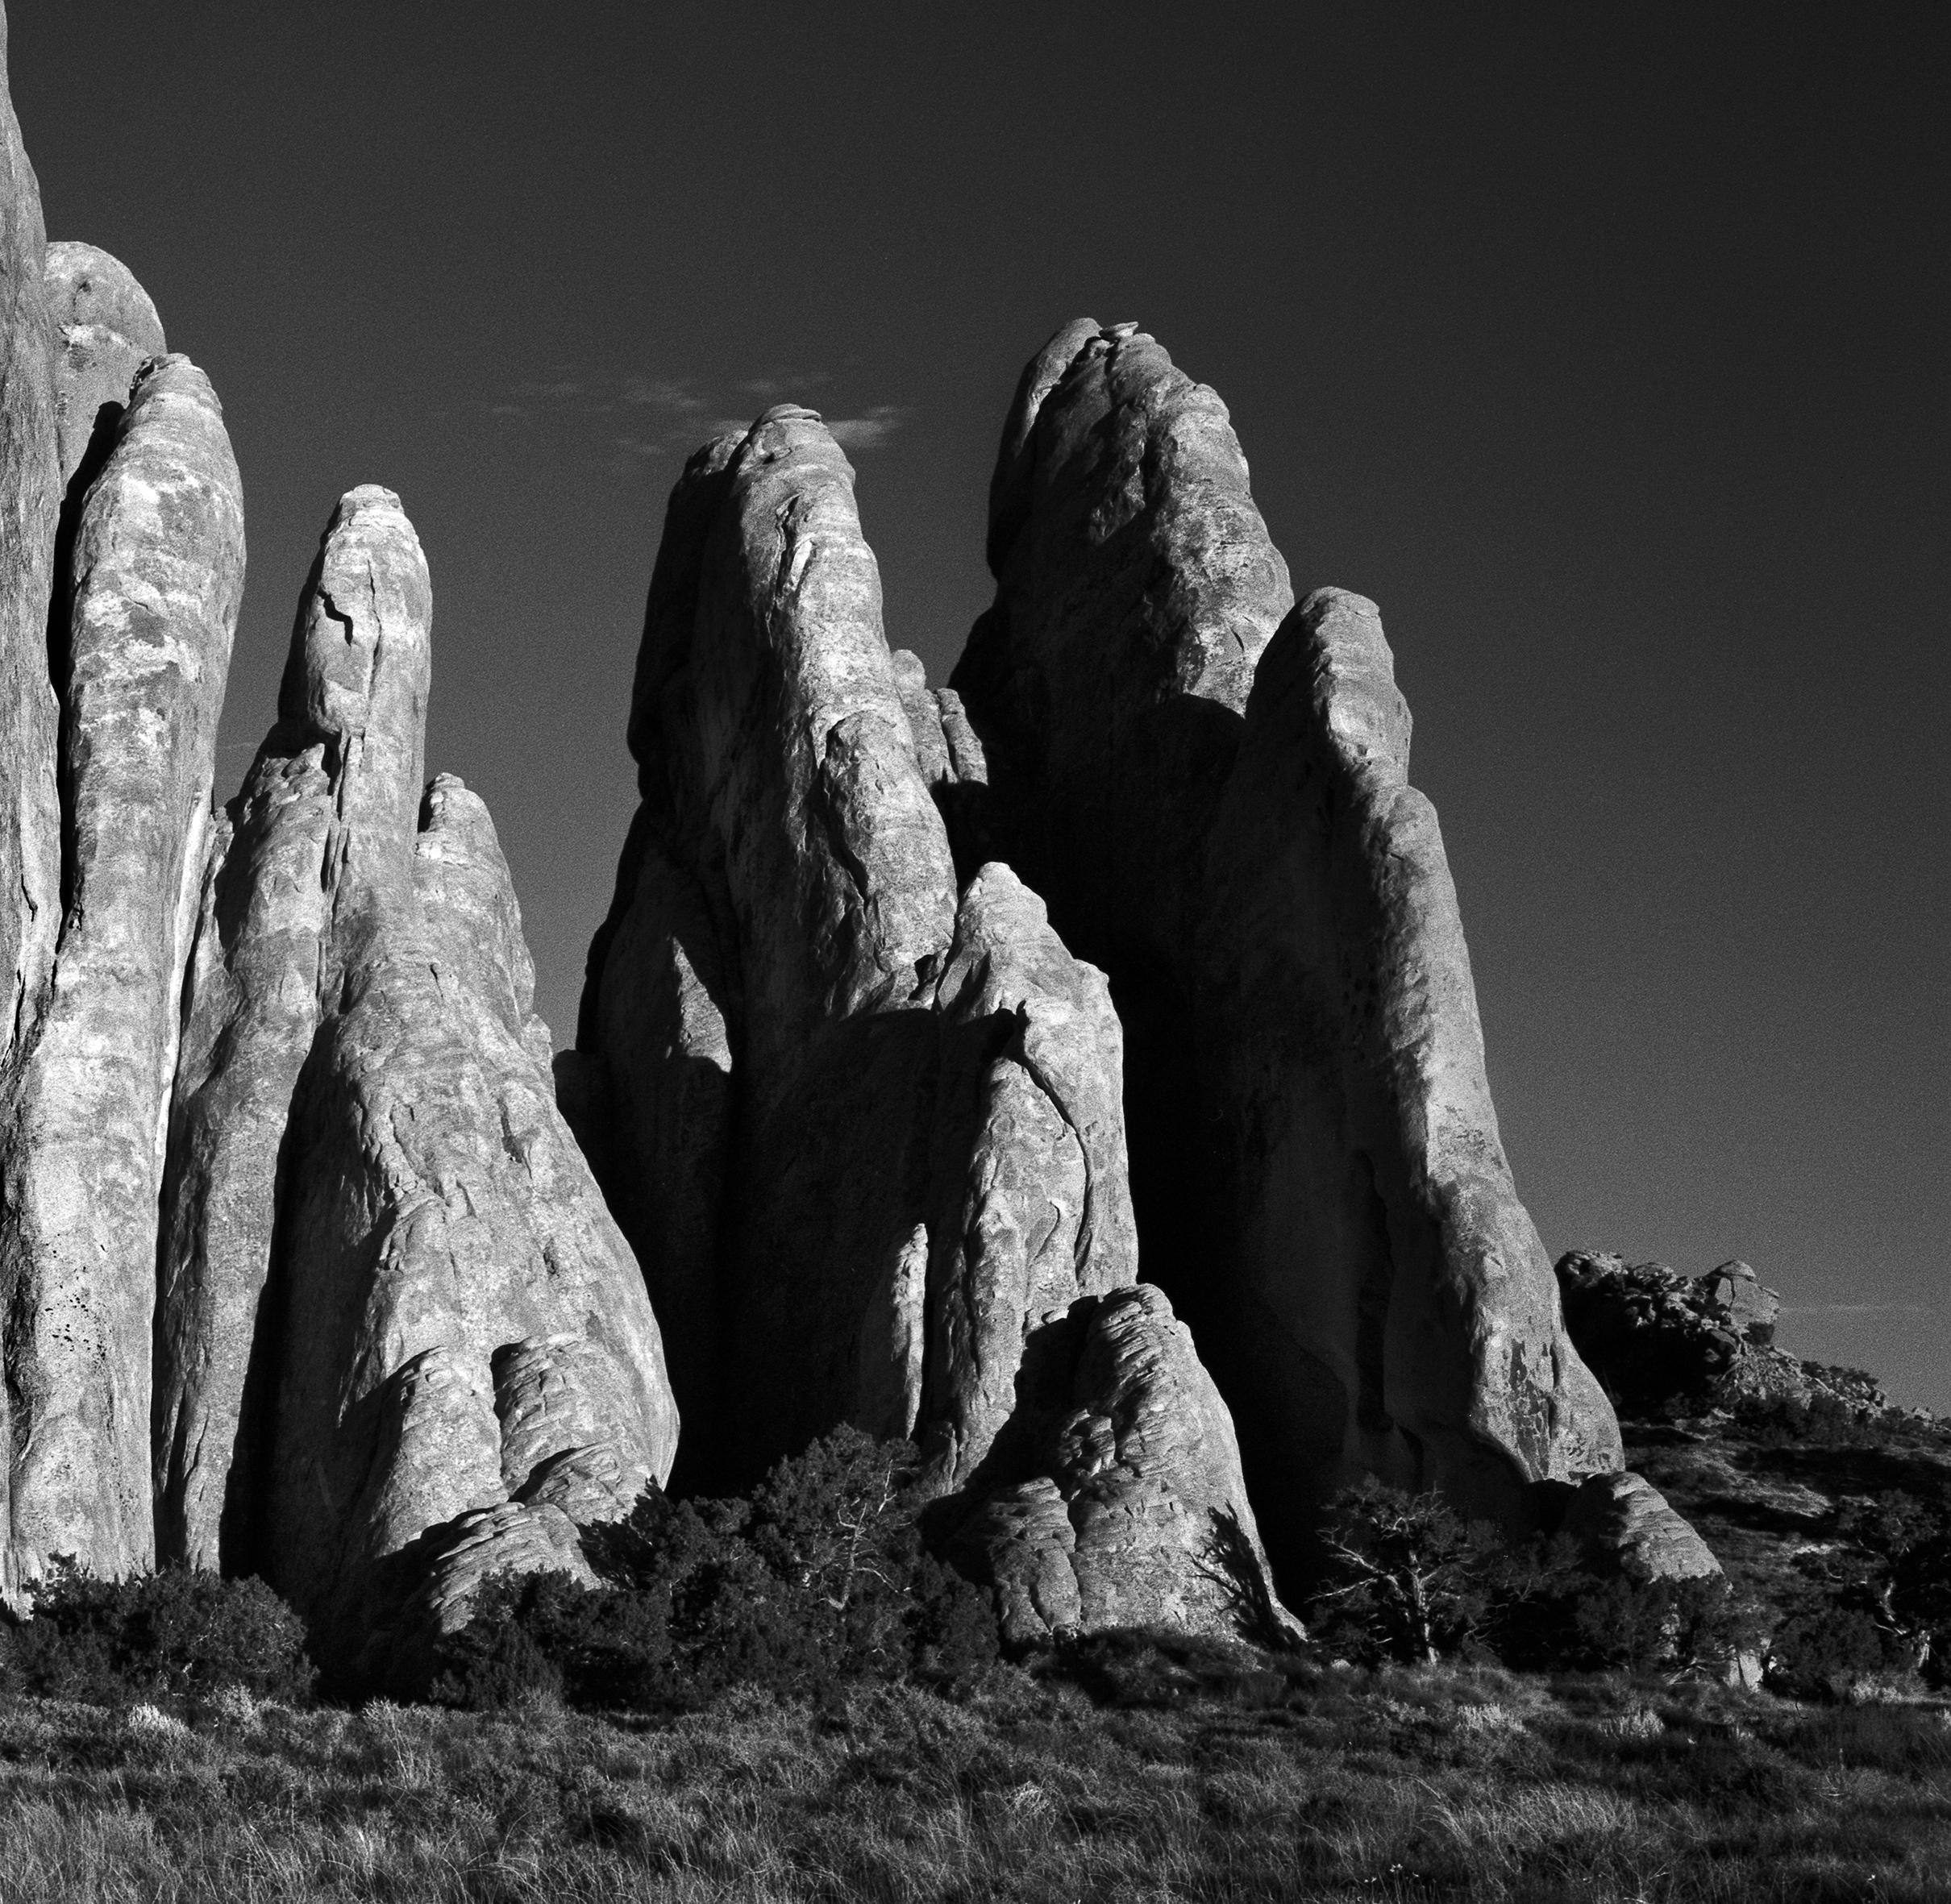 Sand Dune Arches #2- Schwarz-Weiß-Bergbögenfotografie, limitierte Auflage von 20 Stück (Zeitgenössisch), Photograph, von Ugne Pouwell